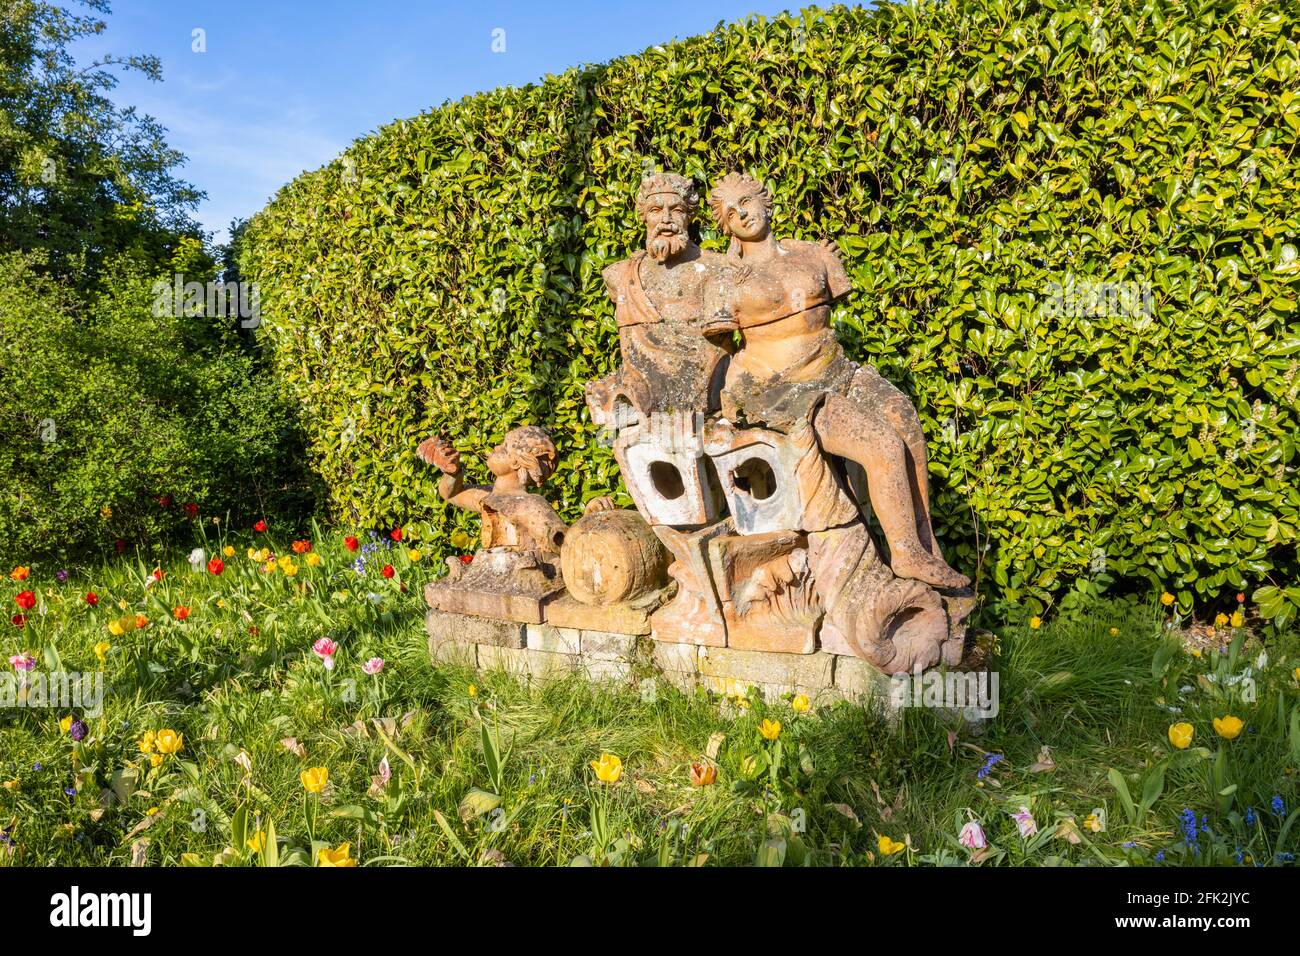 Statue de terre cuite vue au festival des tulipes de printemps à Dunsborough Park, Ripley, Surrey, au sud-est de l'Angleterre en avril Banque D'Images